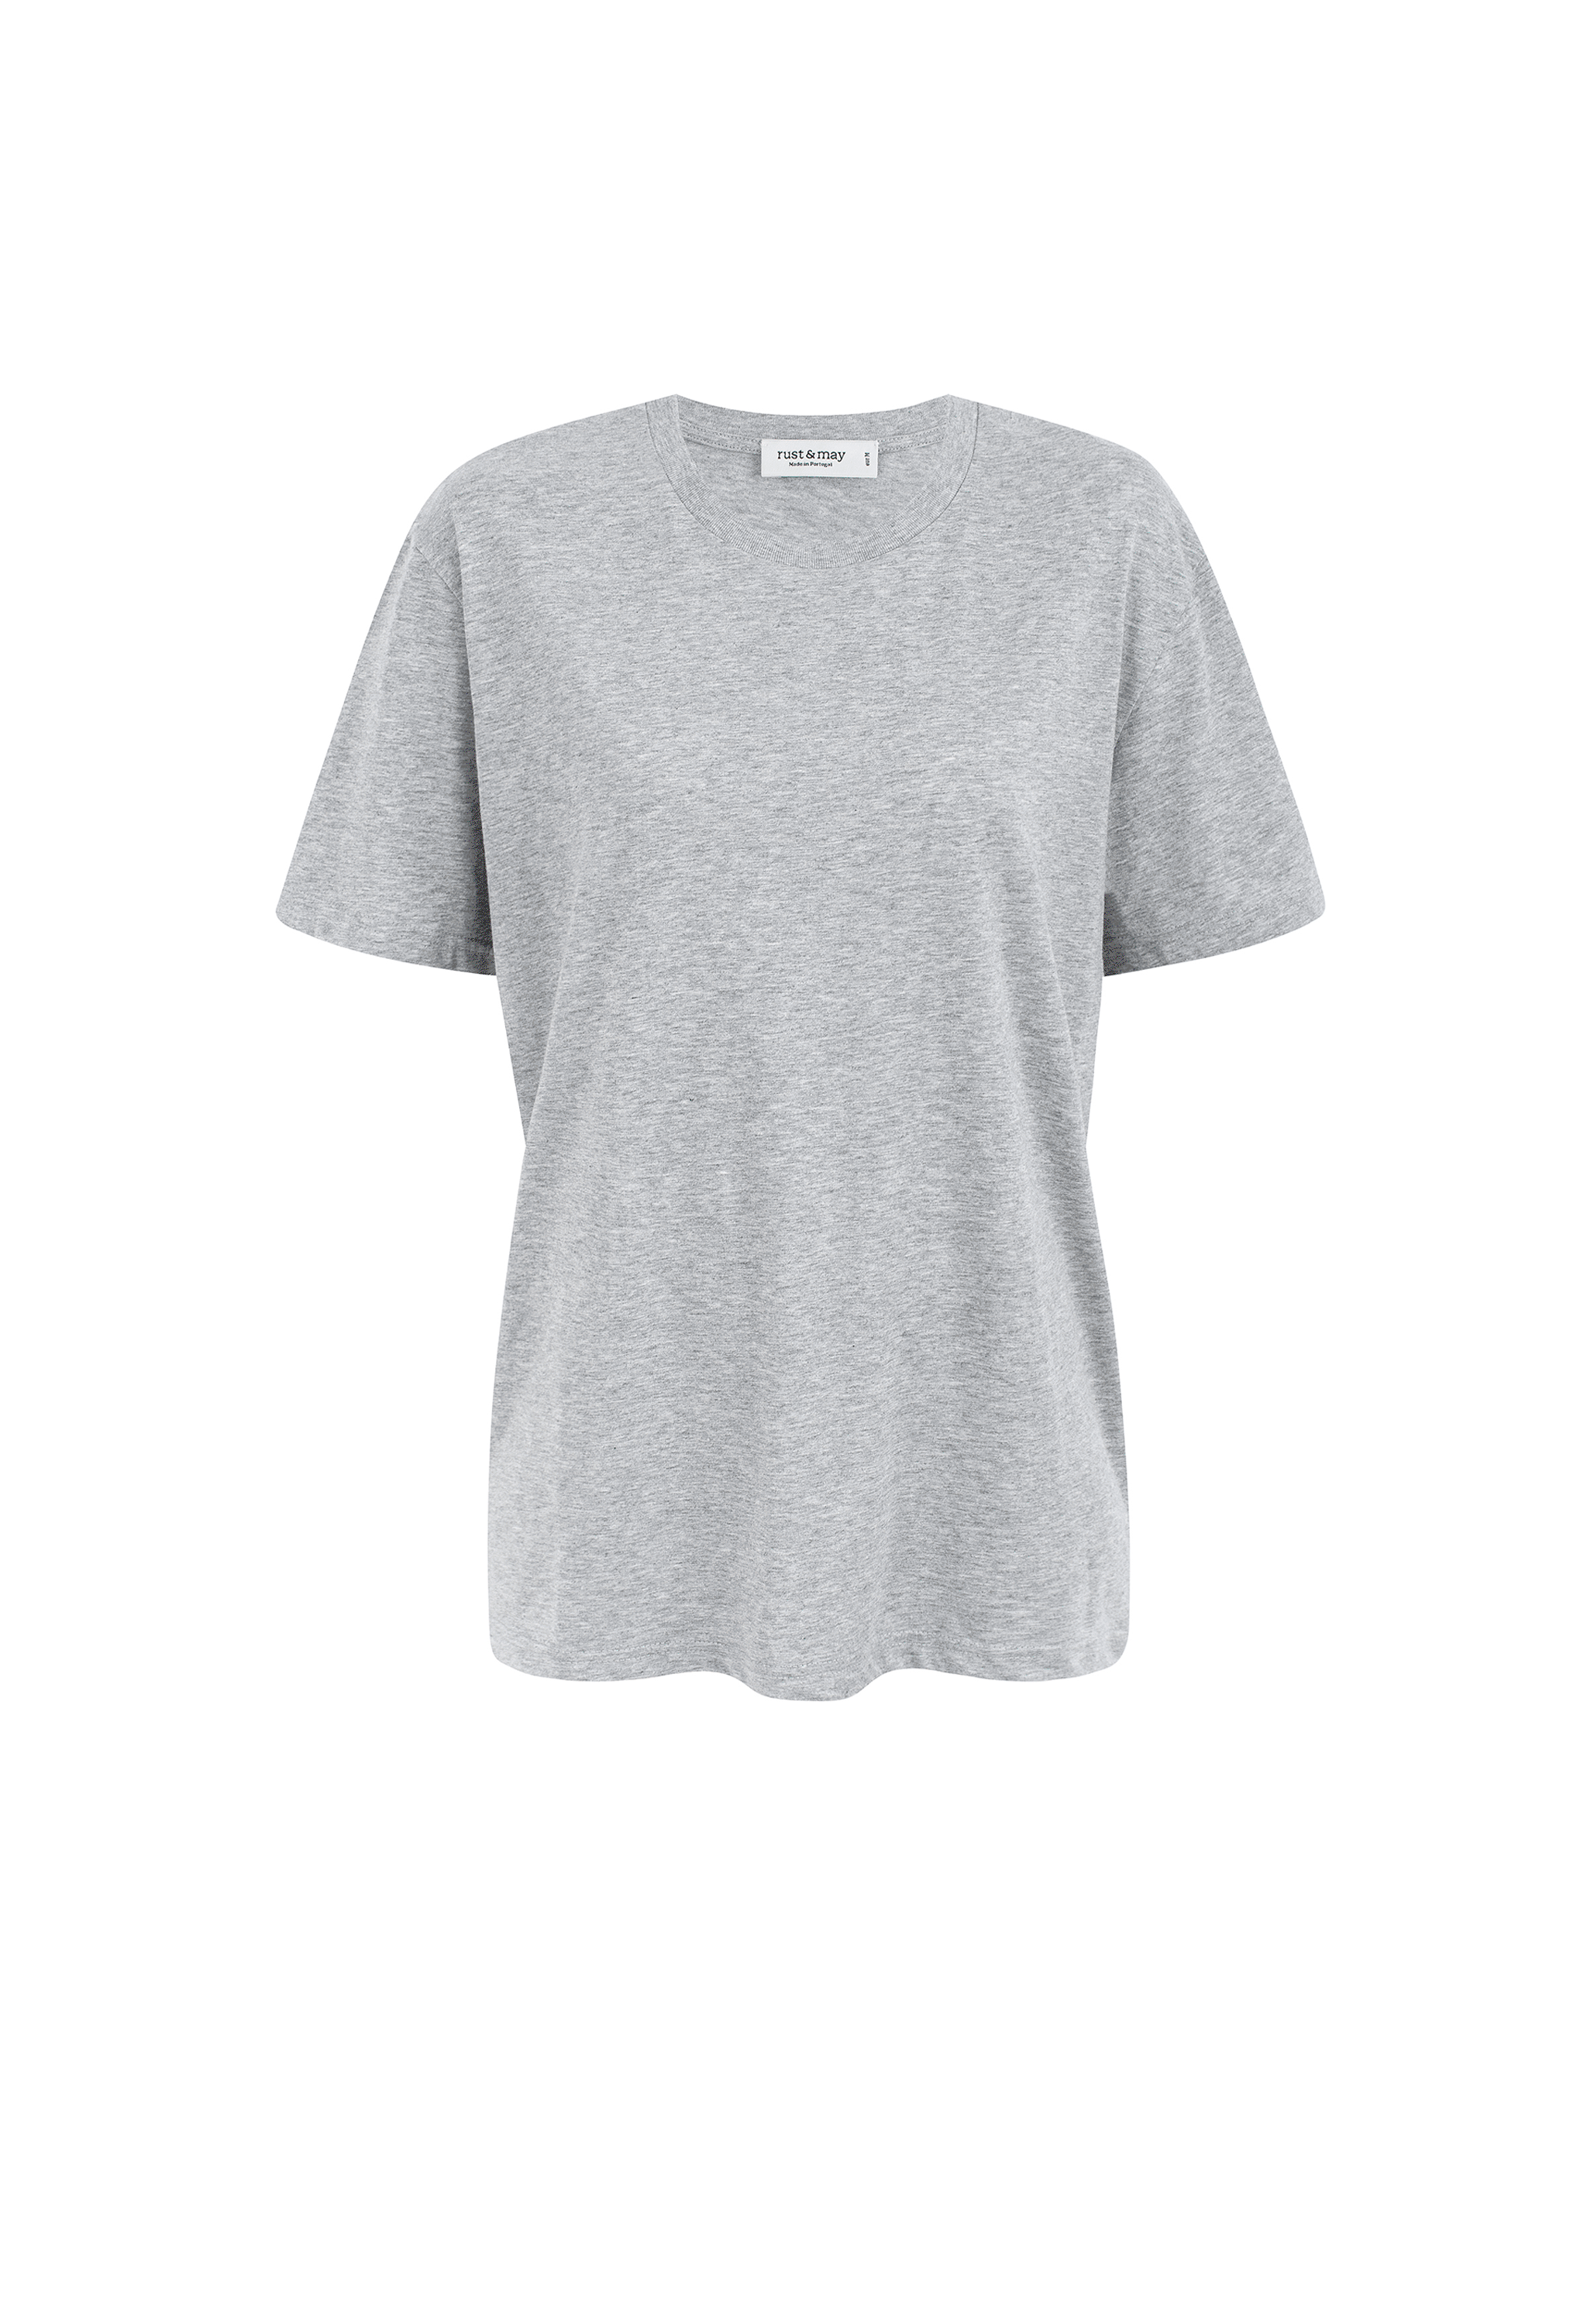 Basic Unisex T-shirt (Custom Option)